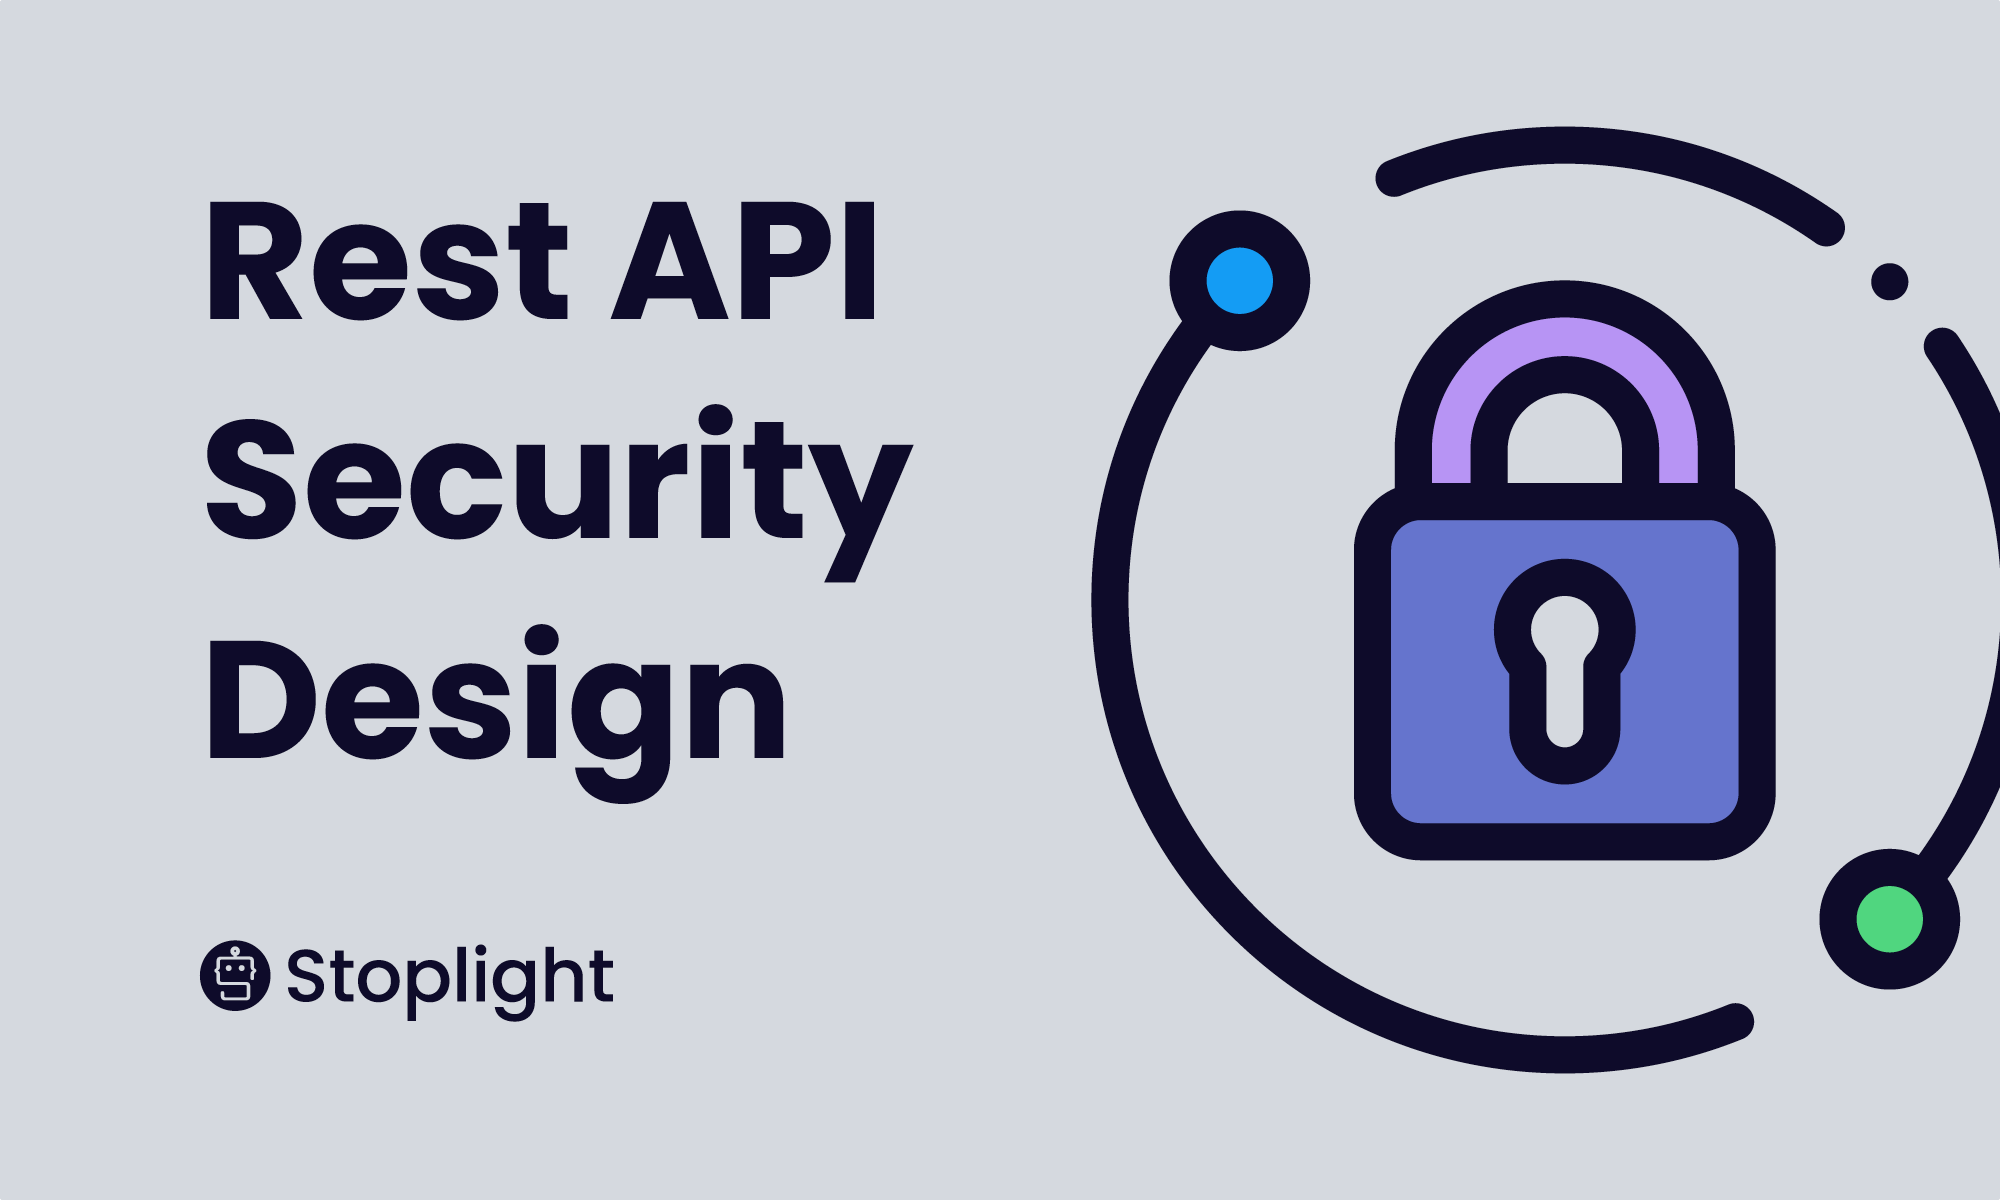 REST API Security Design Best Practices